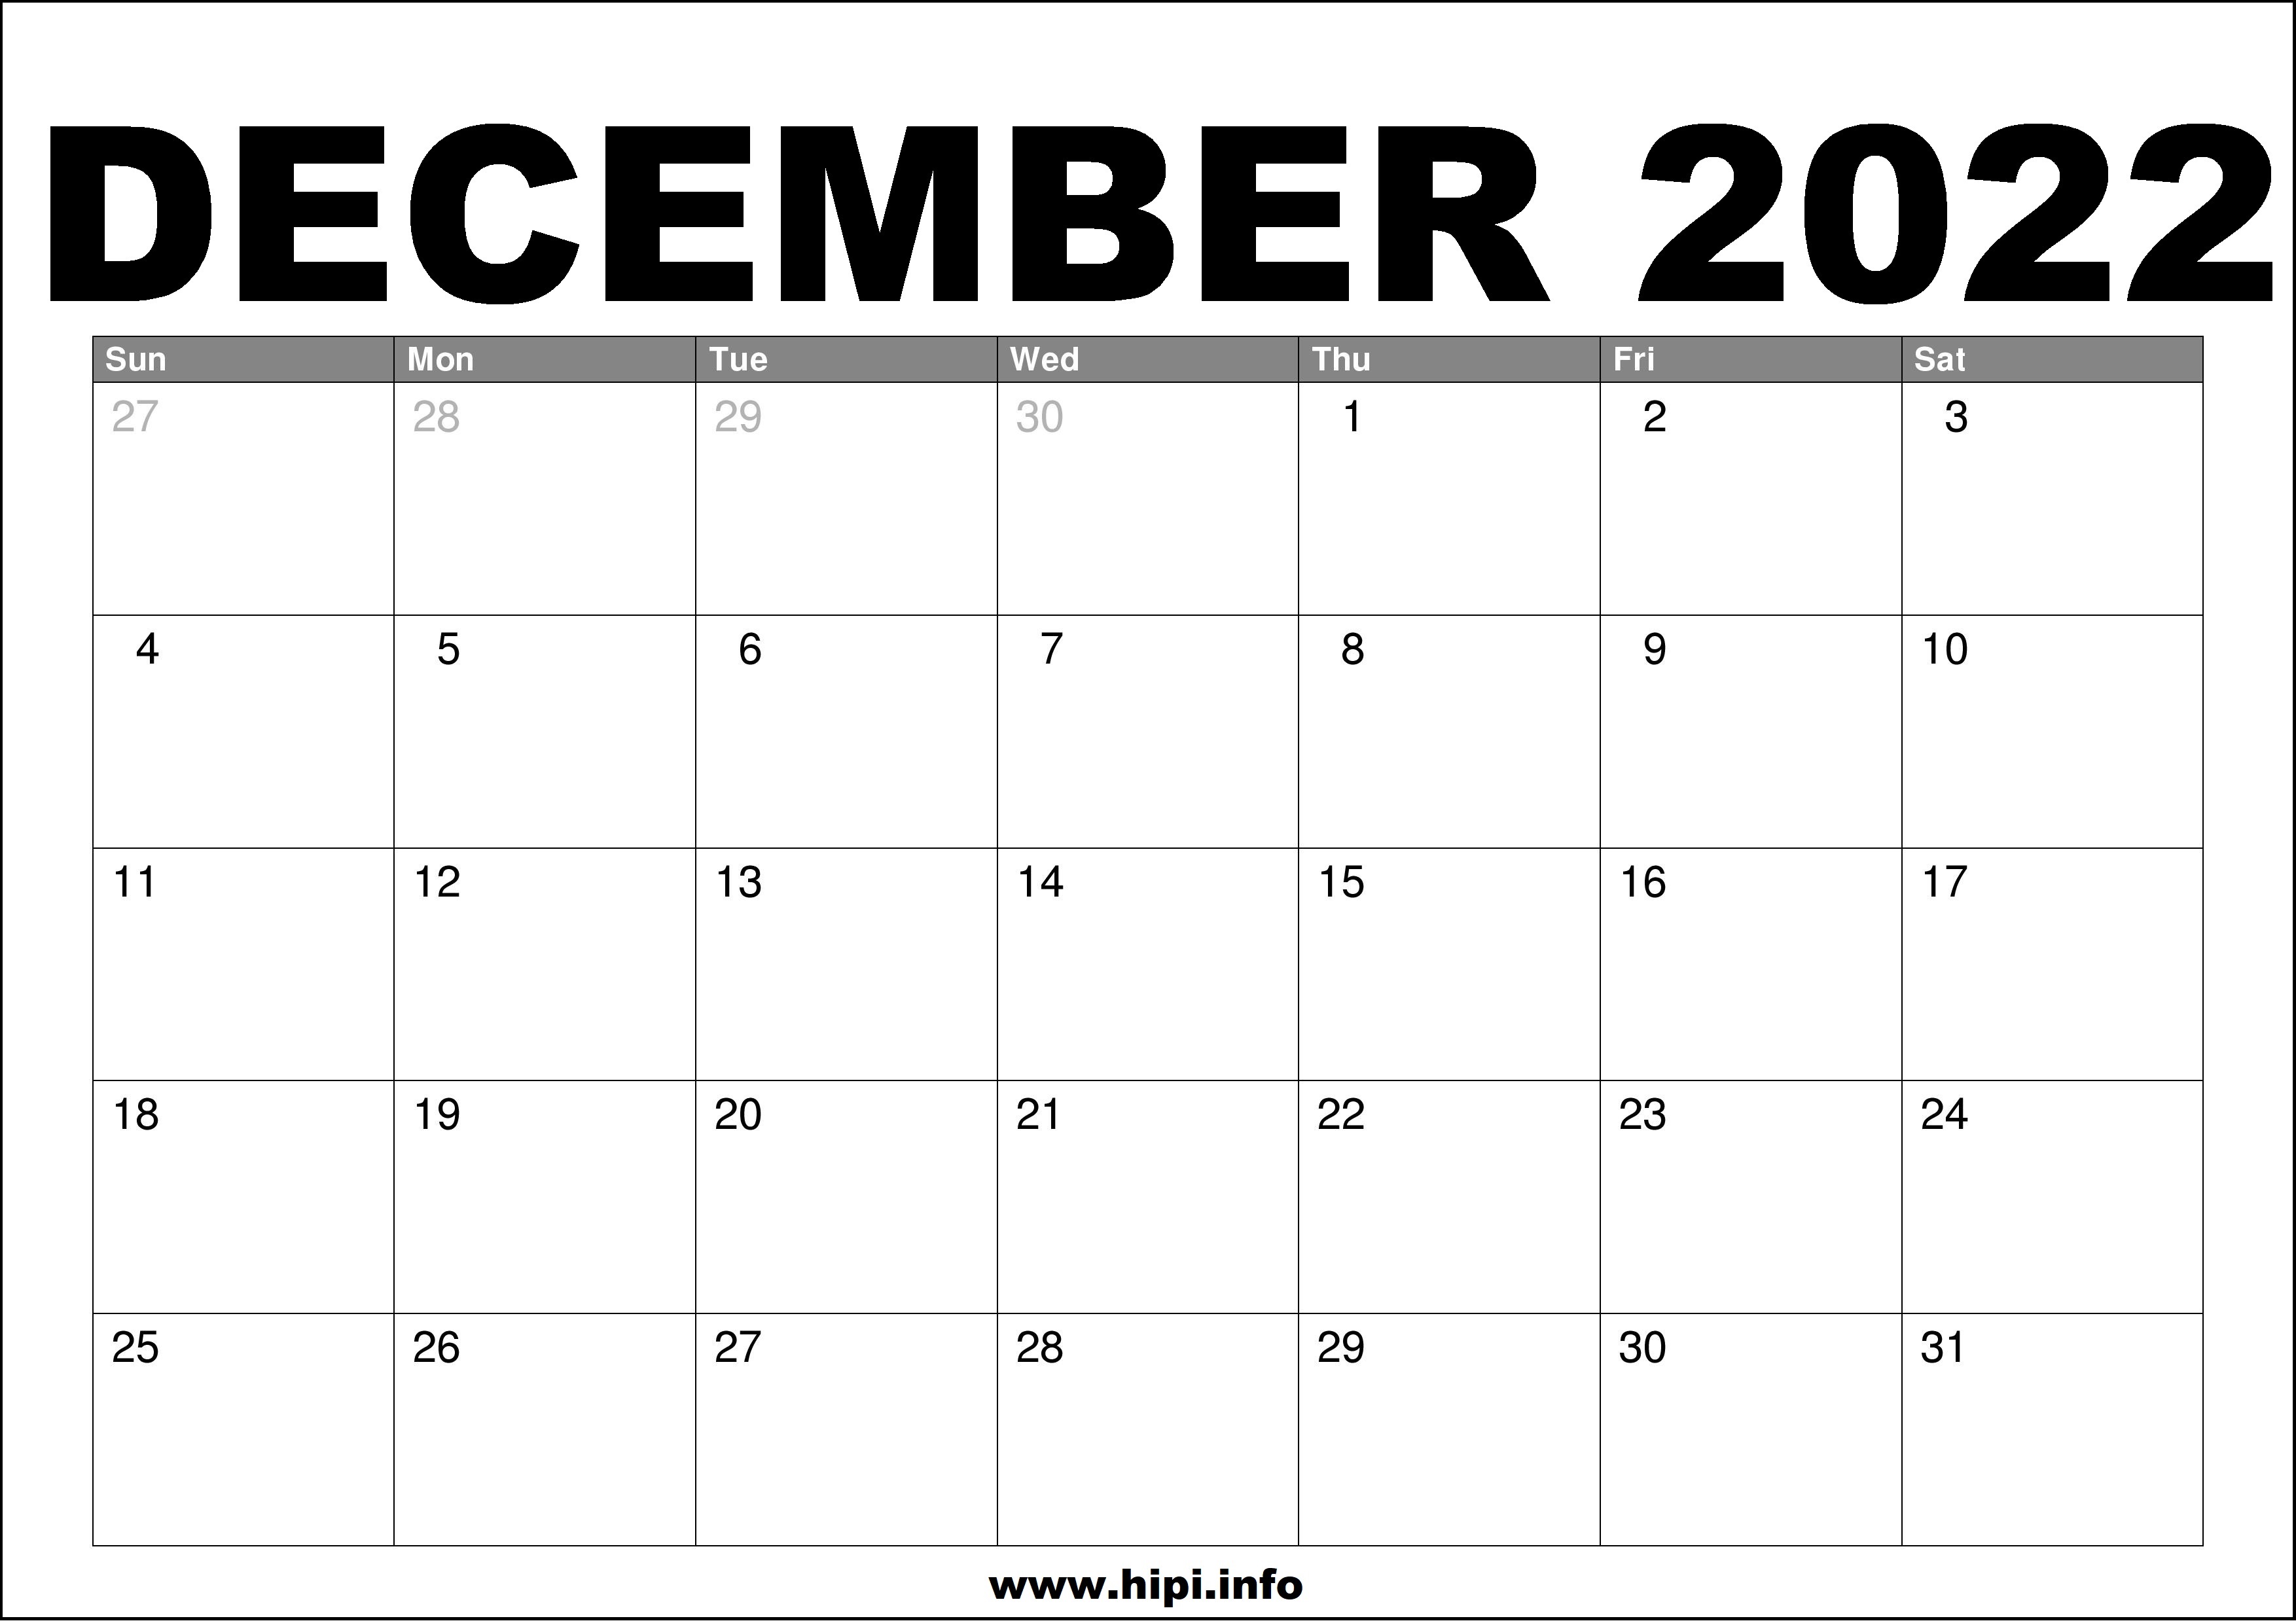 December 2022 Calendar Printable Free - Hipi.info | Calendars Printable Free